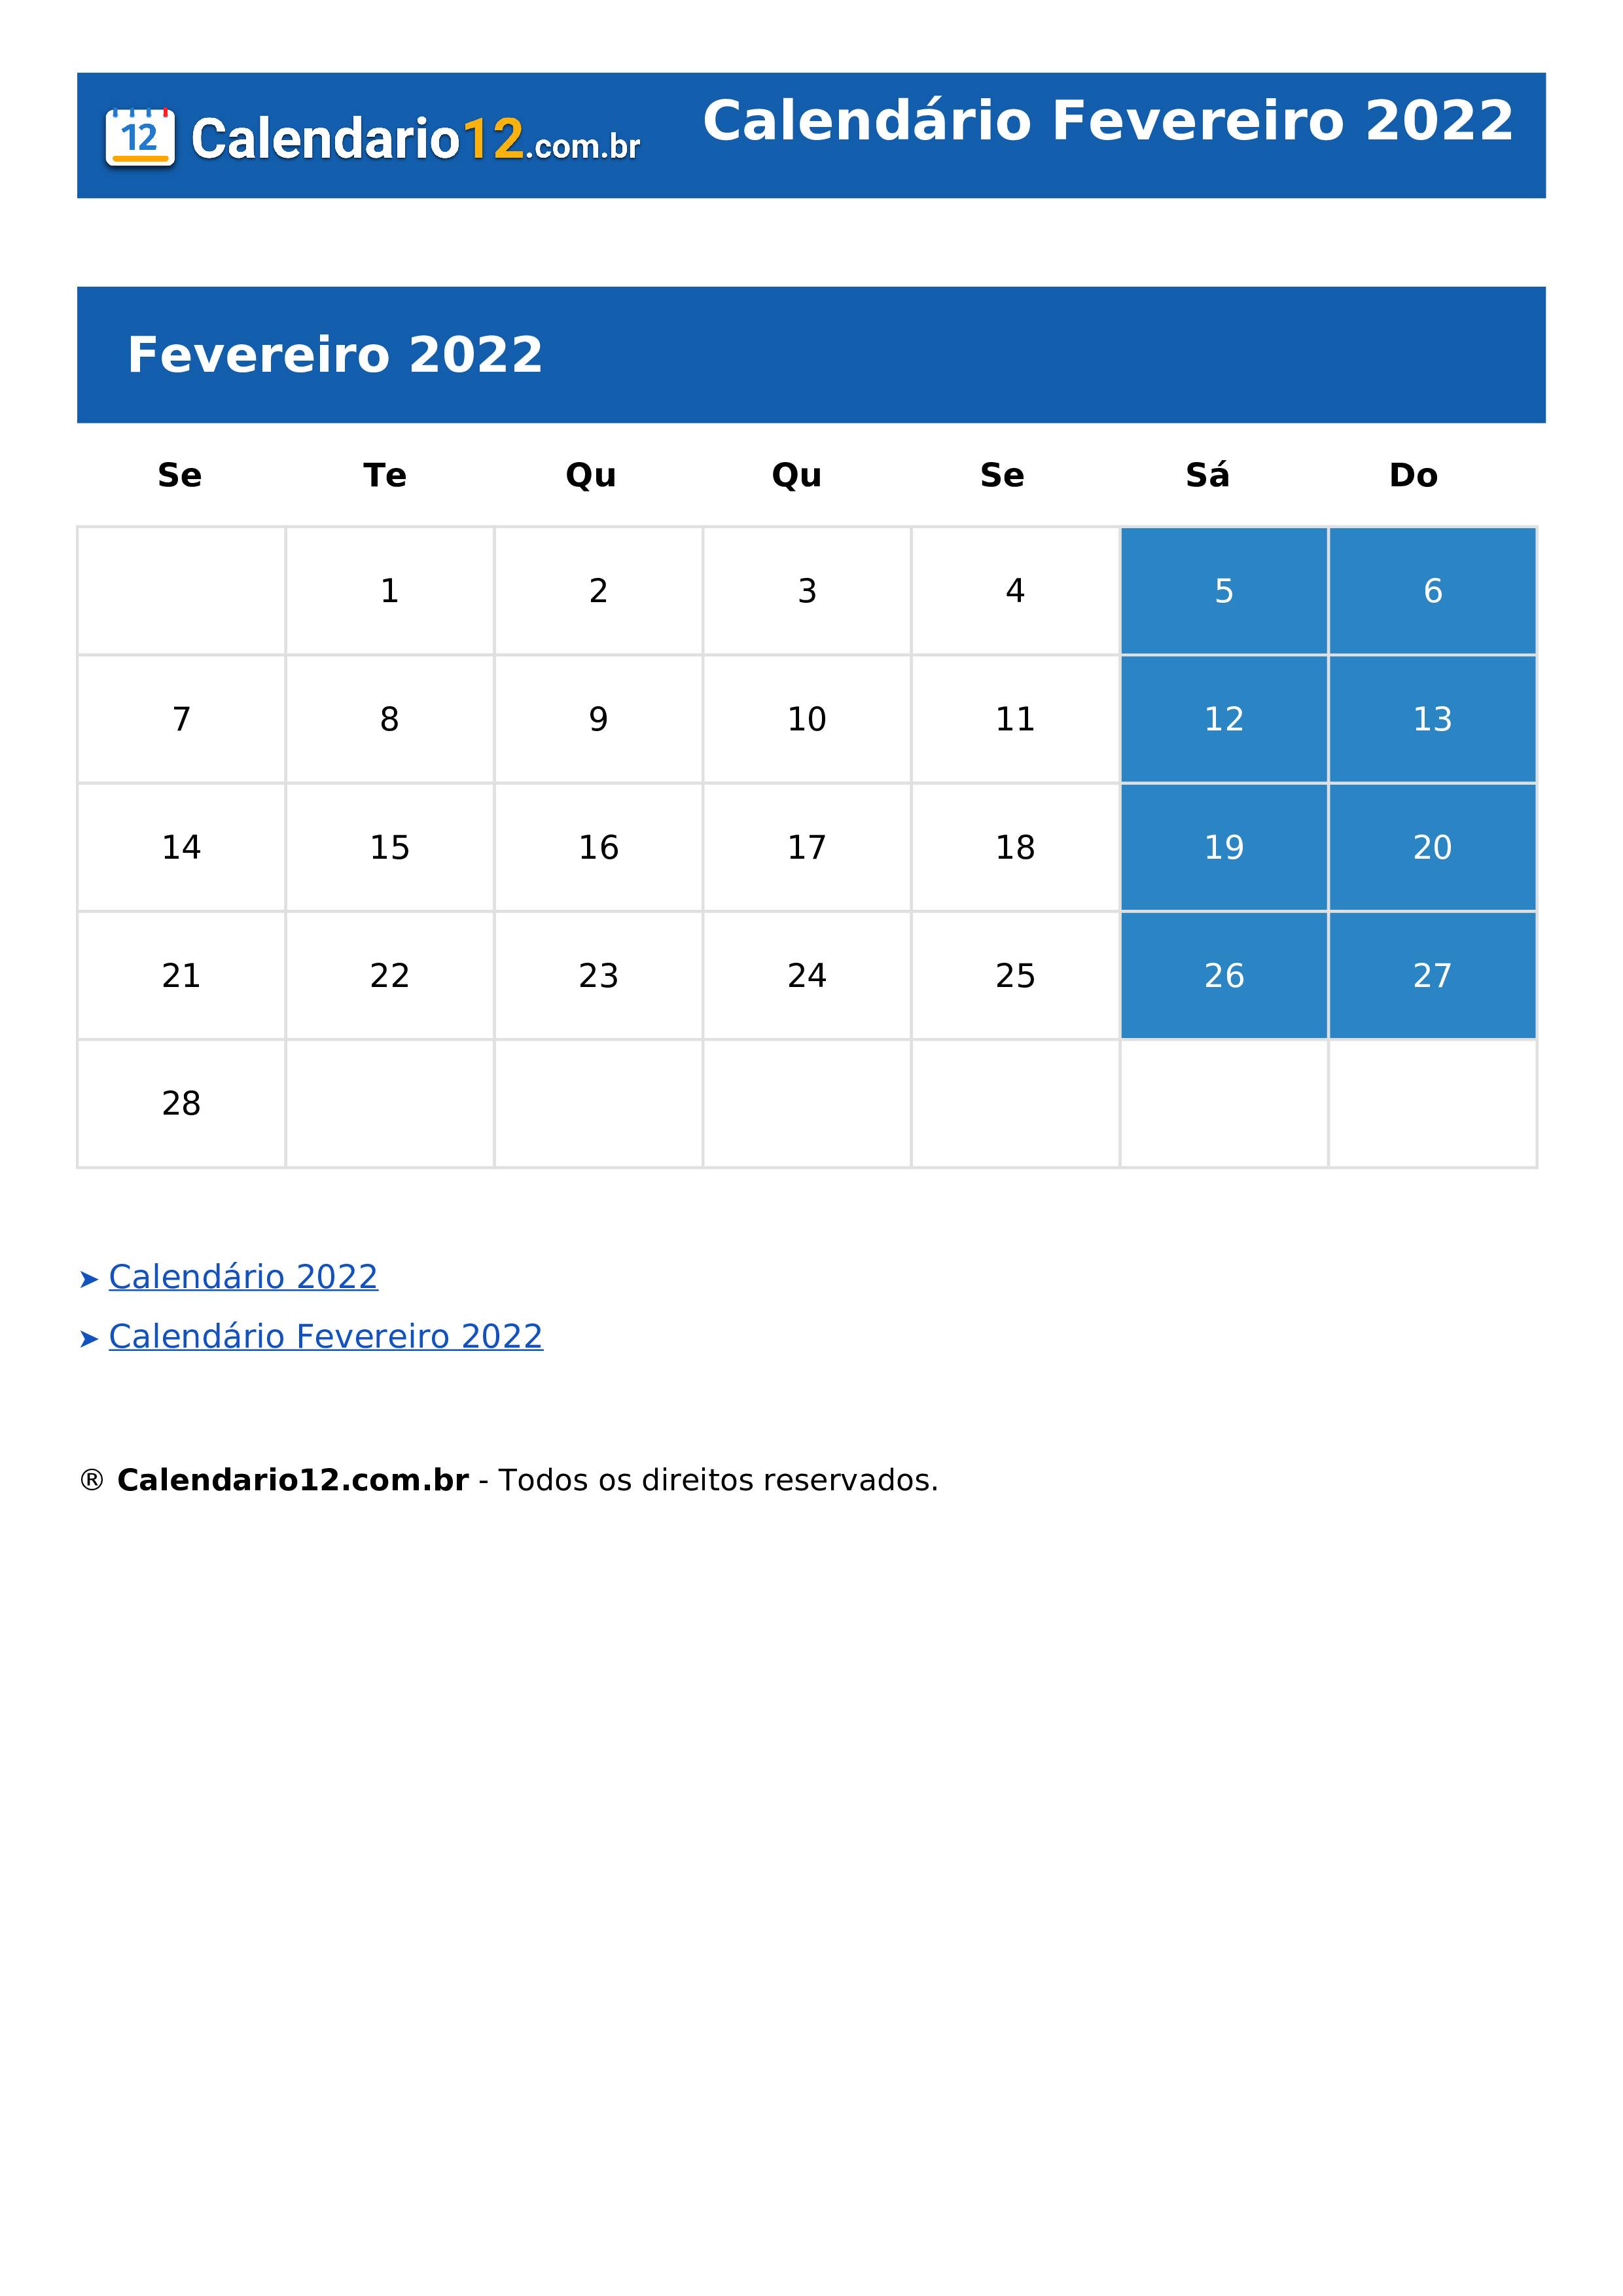 Calendário Fevereiro 2022